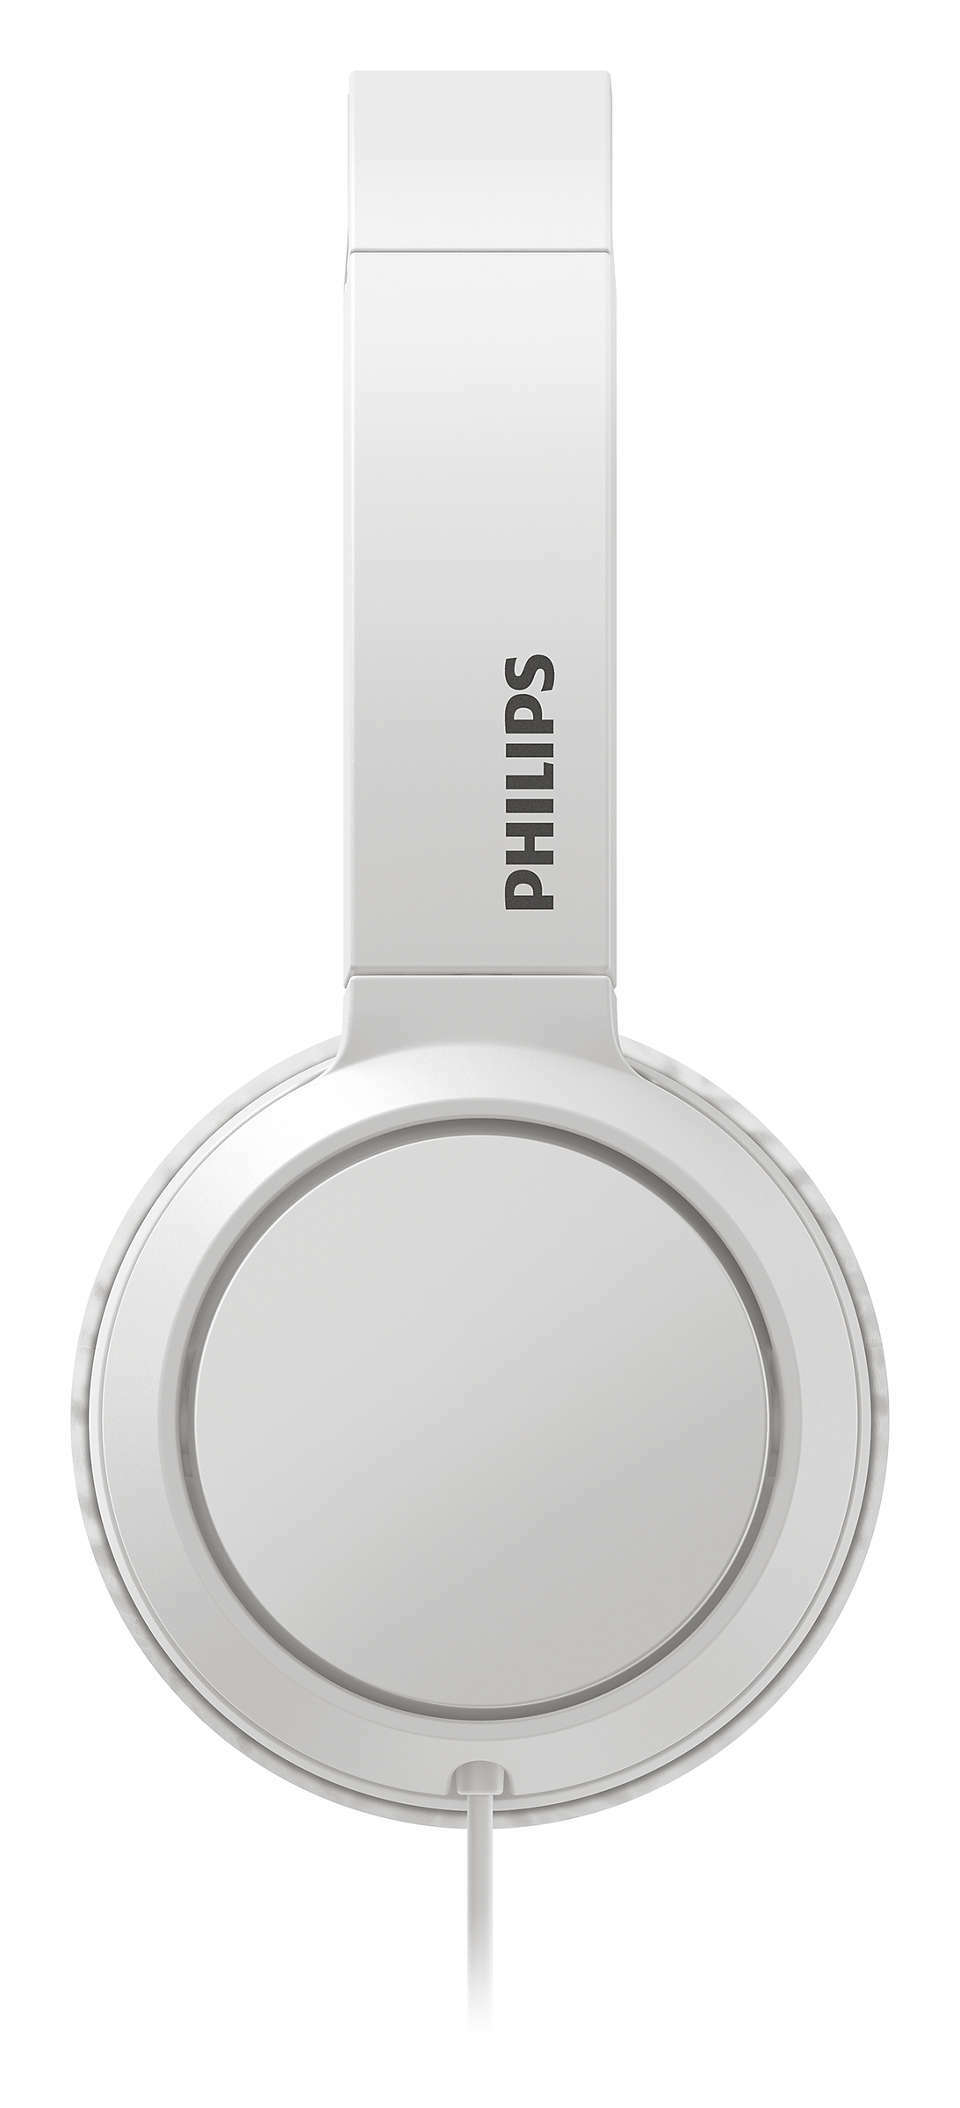 Philips TAH4105 /